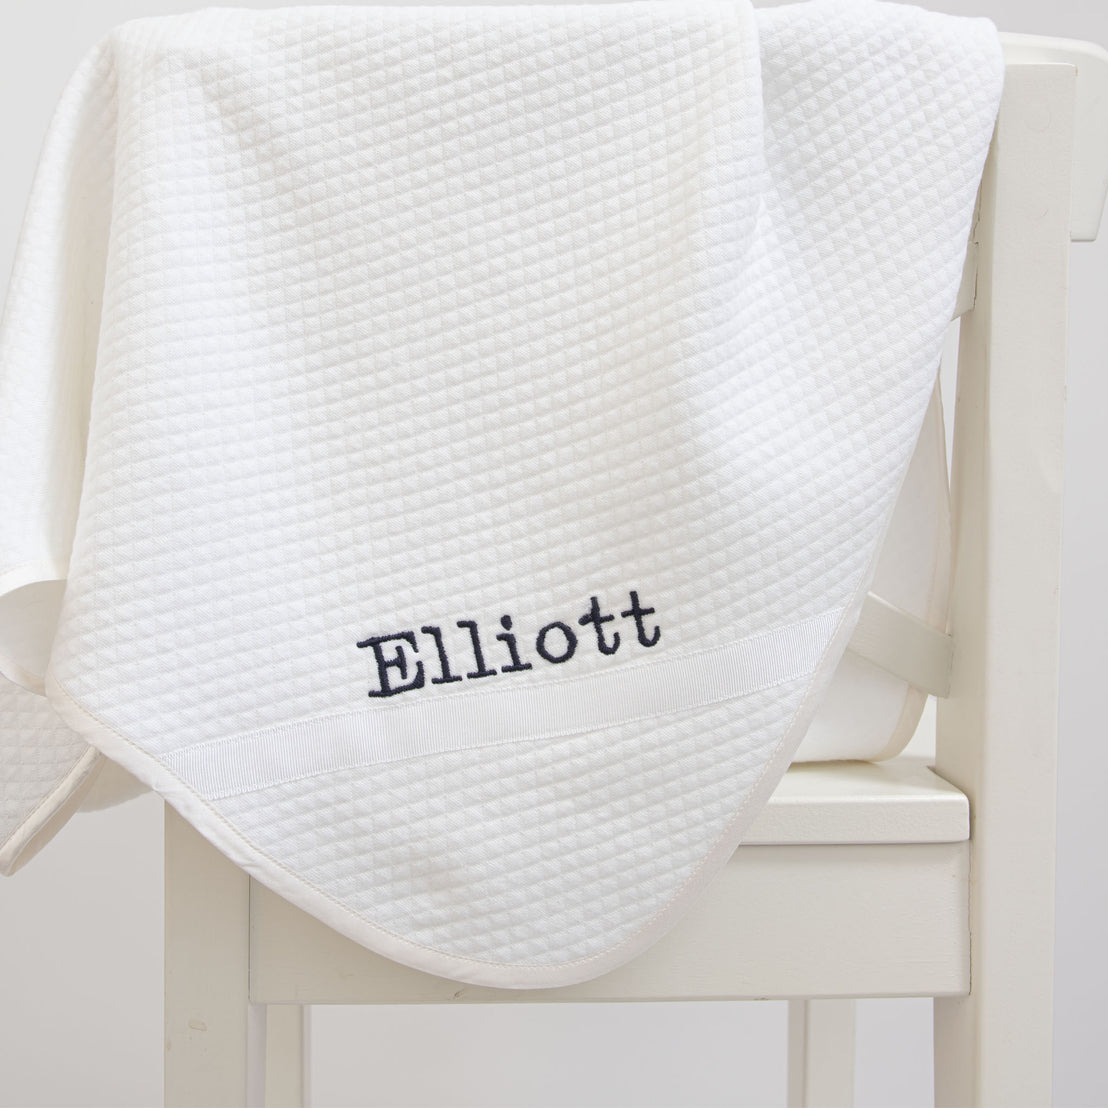 Elliott Suit Accessory Bundle- Save 15%